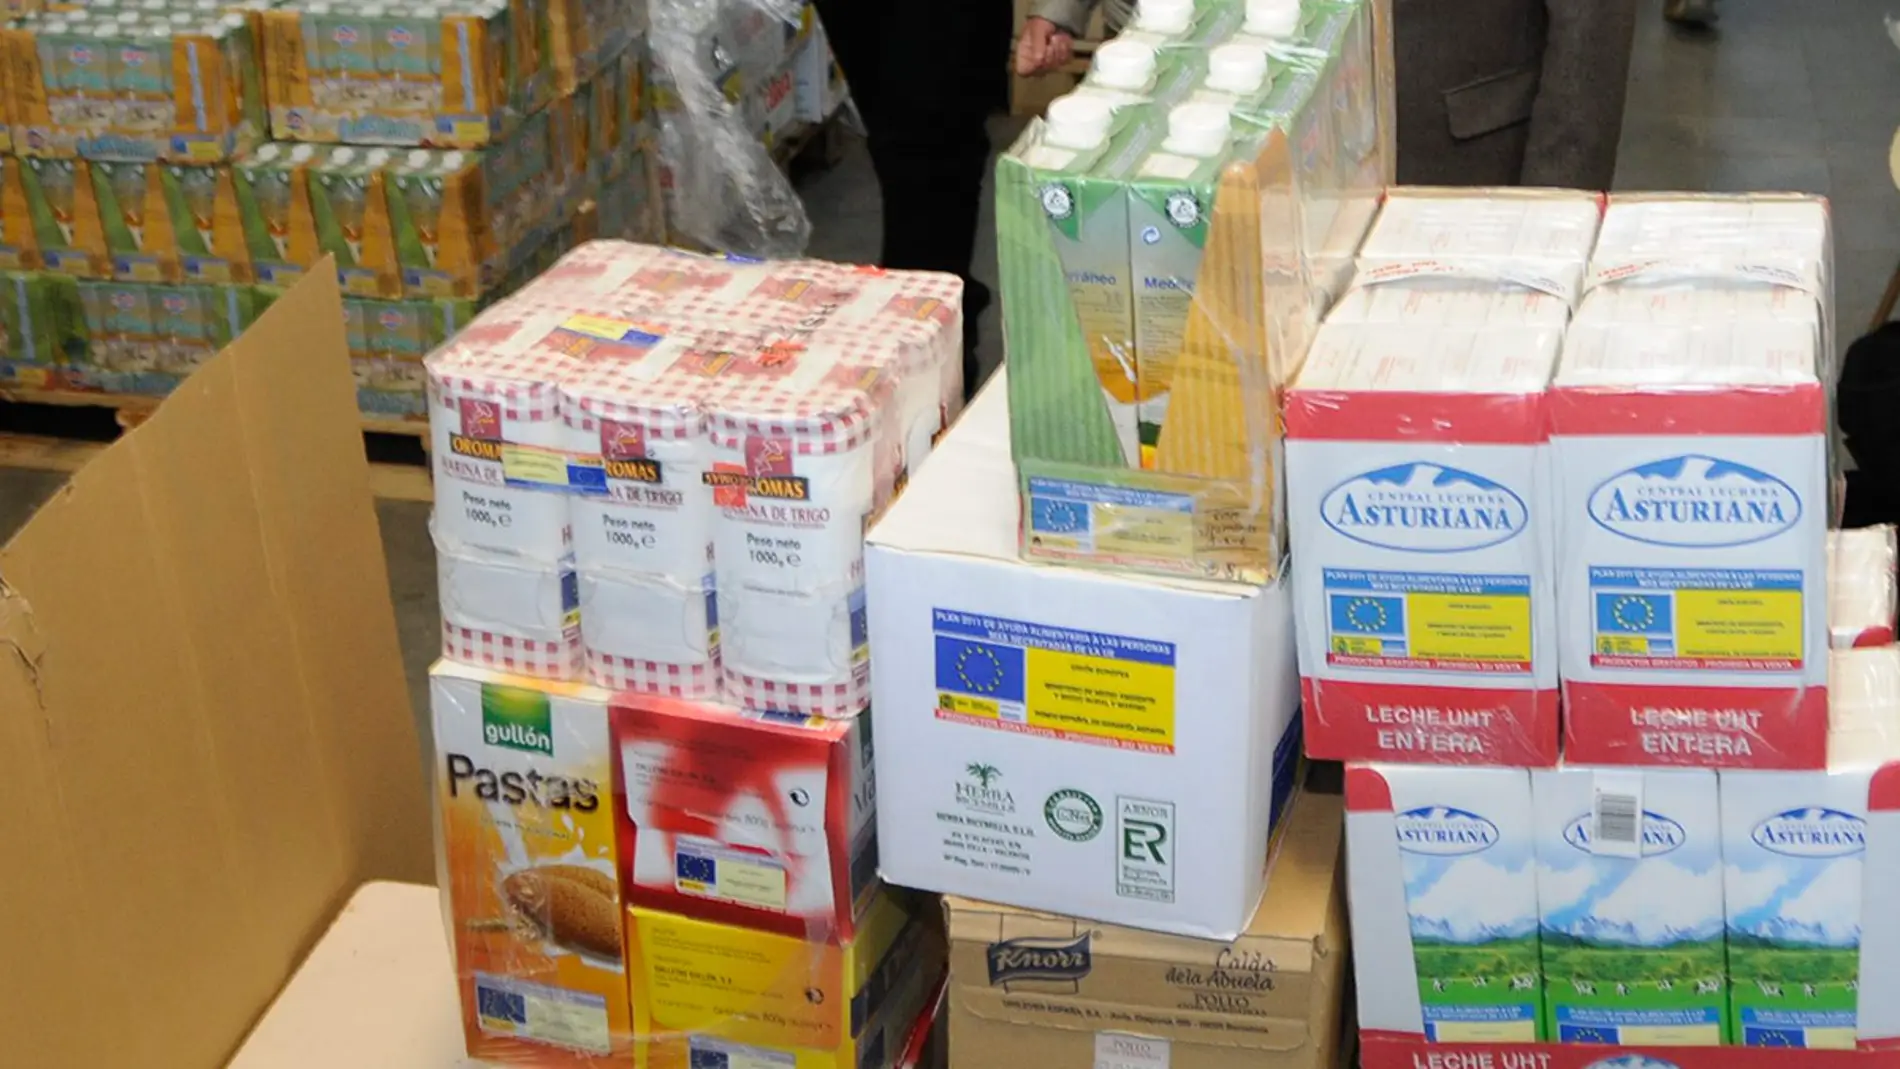 El Banco de Alimentos de Badajoz lanza una campaña para conseguir leche durante la próxima semana